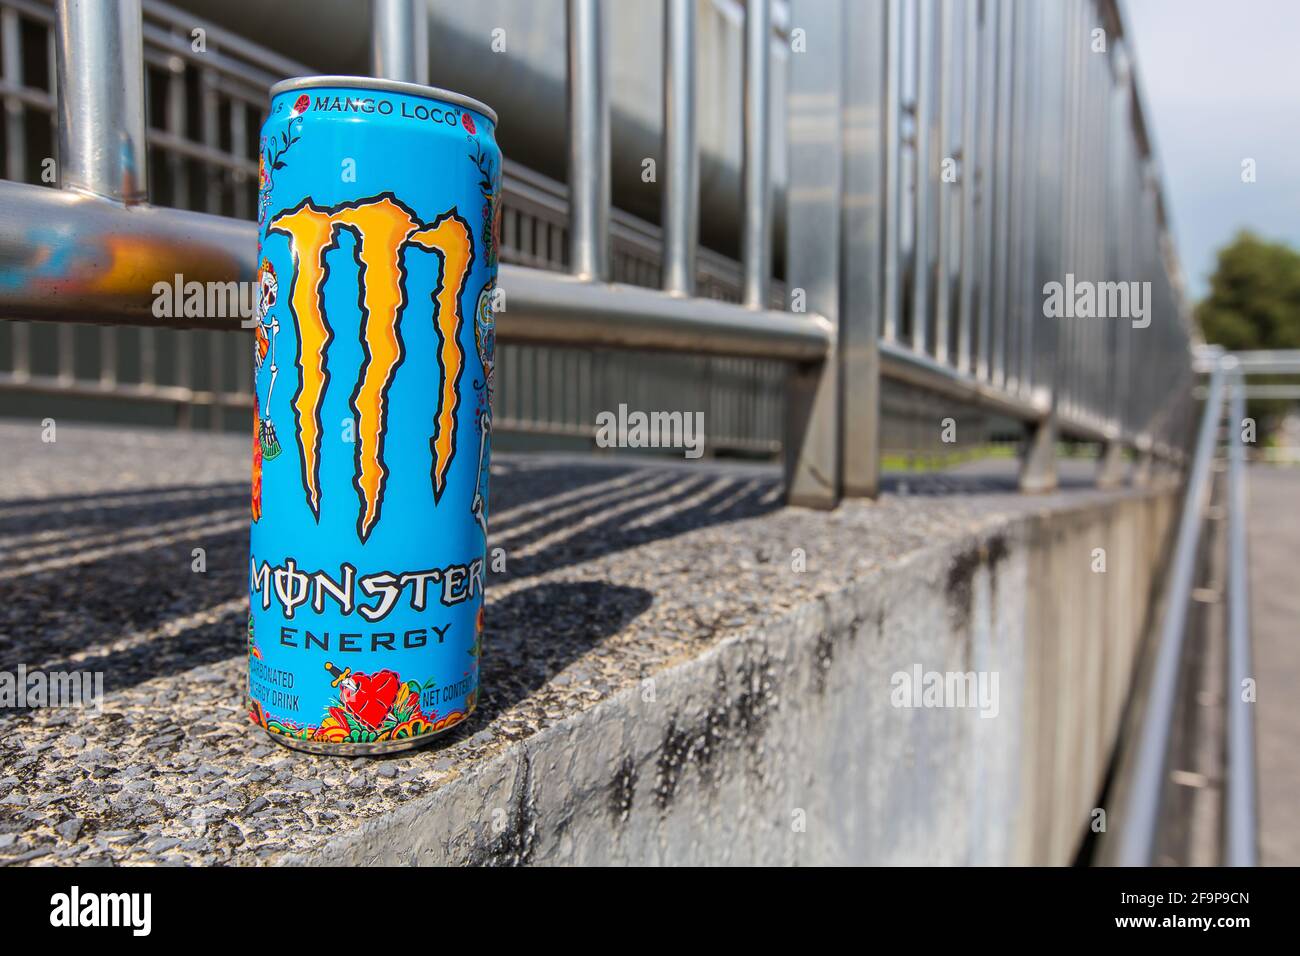 Boisson énergétique Monster saveur Mango Loco, en extérieur Photo Stock -  Alamy